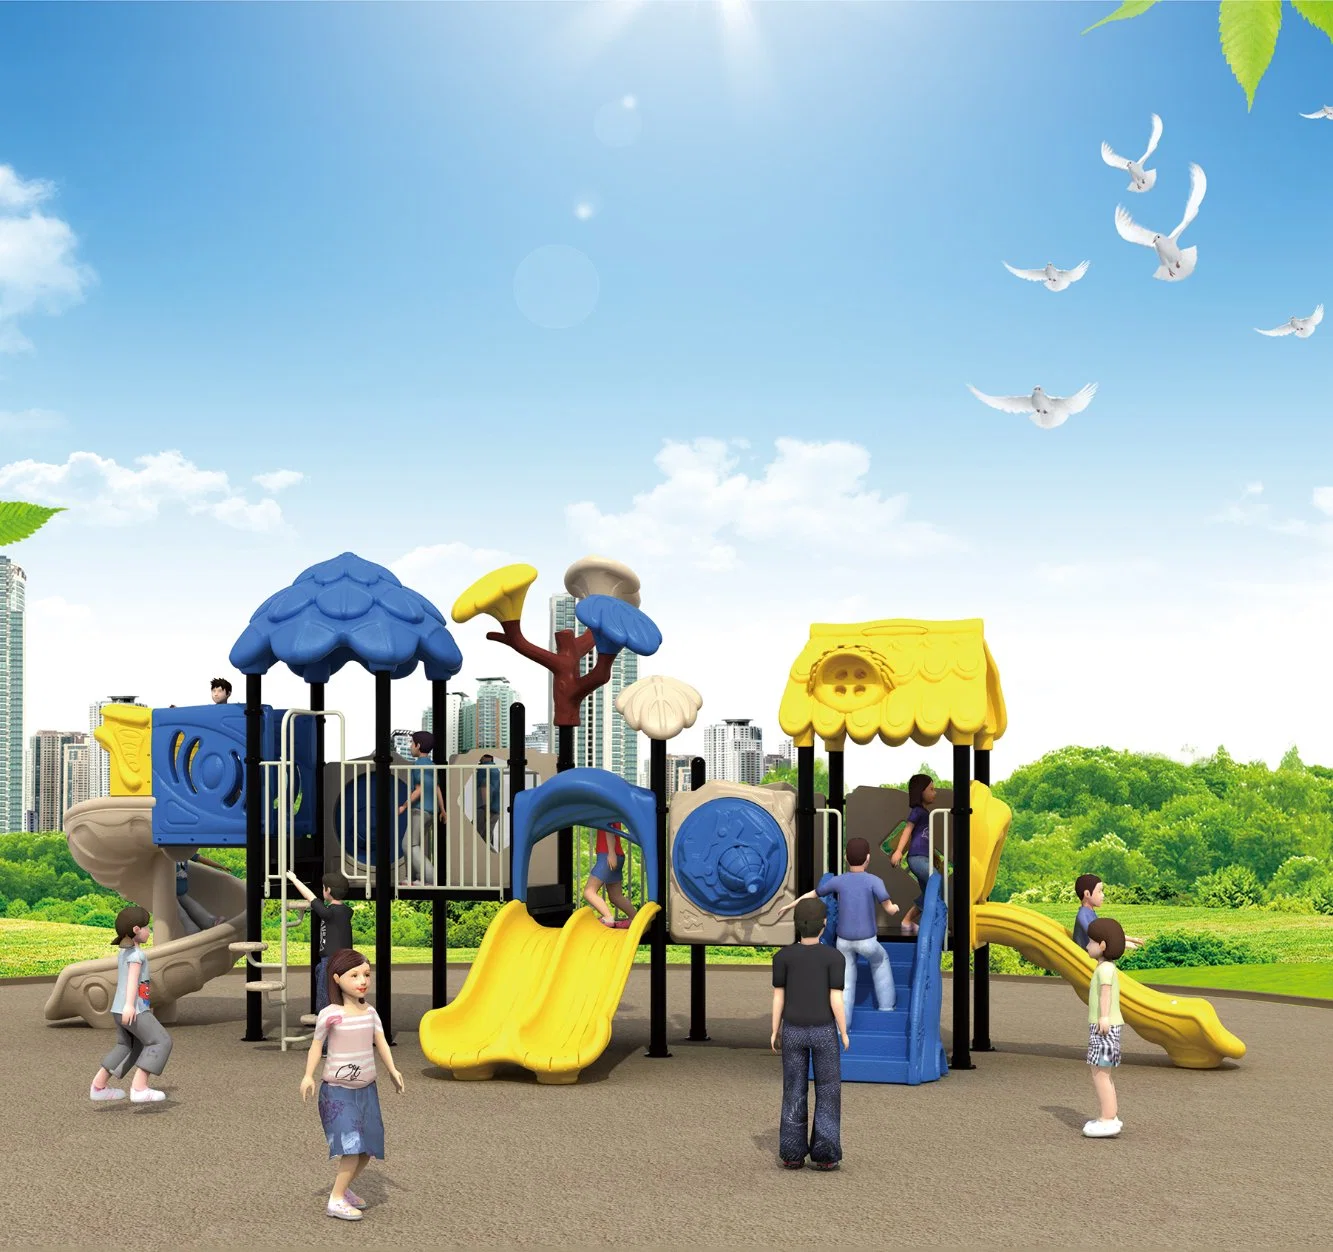 Parque de atracciones estándar europeo juguetes niños juegos de niños al aire libre